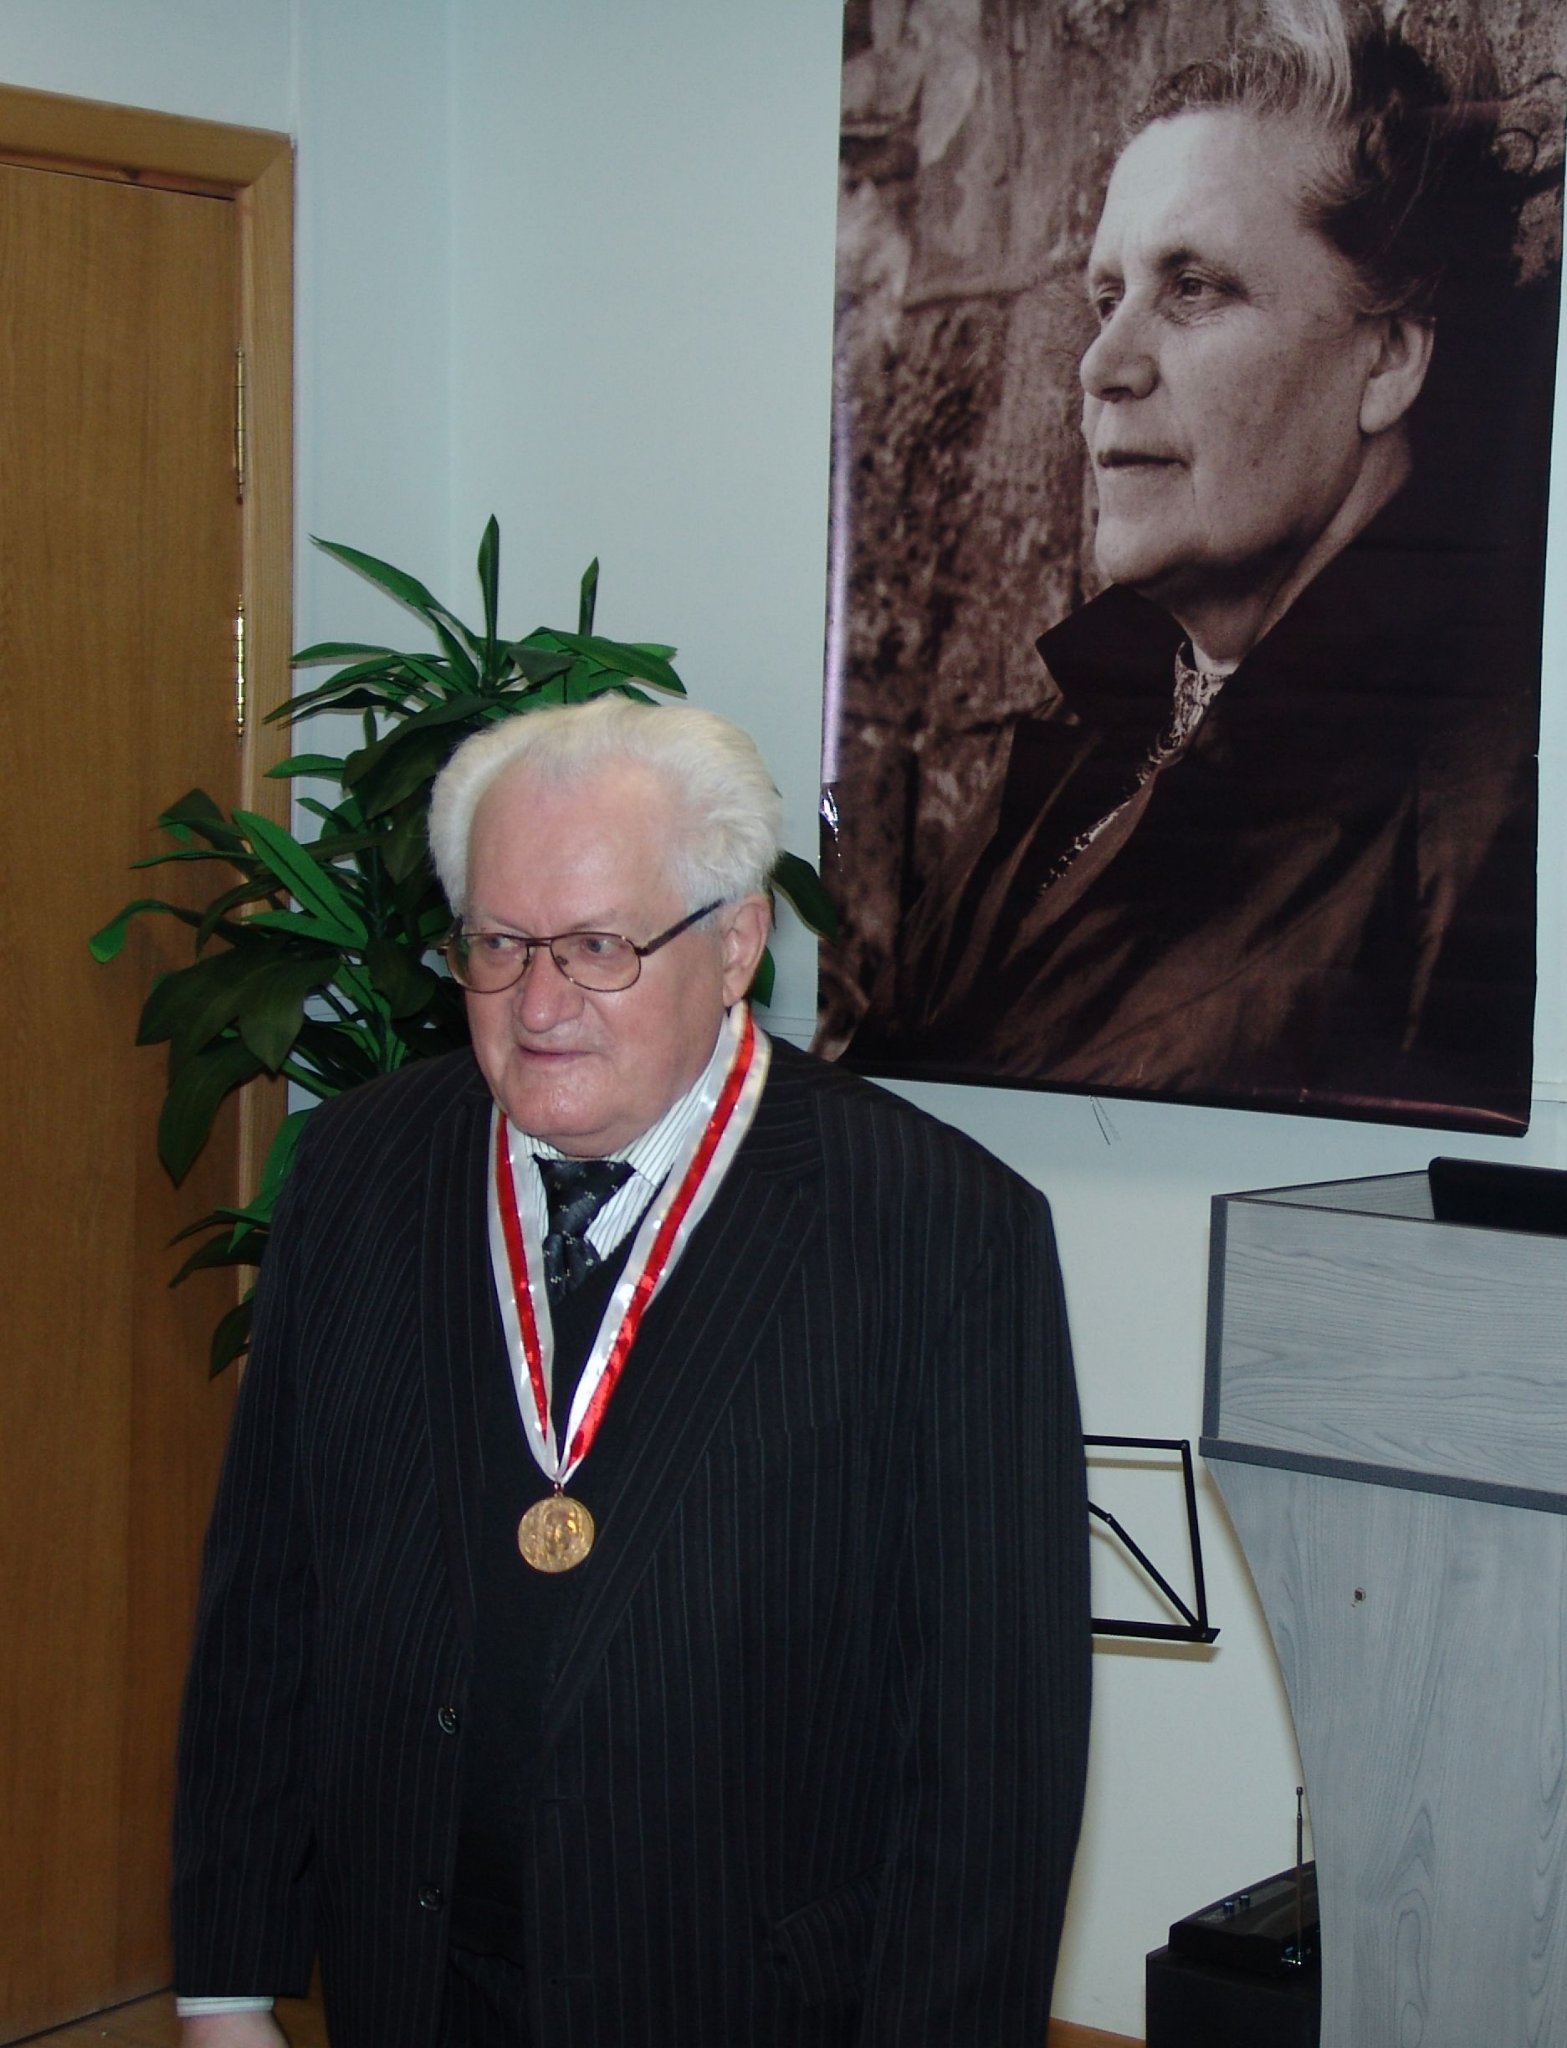 Праф. Адам Мальдзіс (1932-2022) з медалём за выратаванне архіва Ларысы Геніюш у Зэльве, прызнаным у 2010 г. Фота Міхася Скоблы